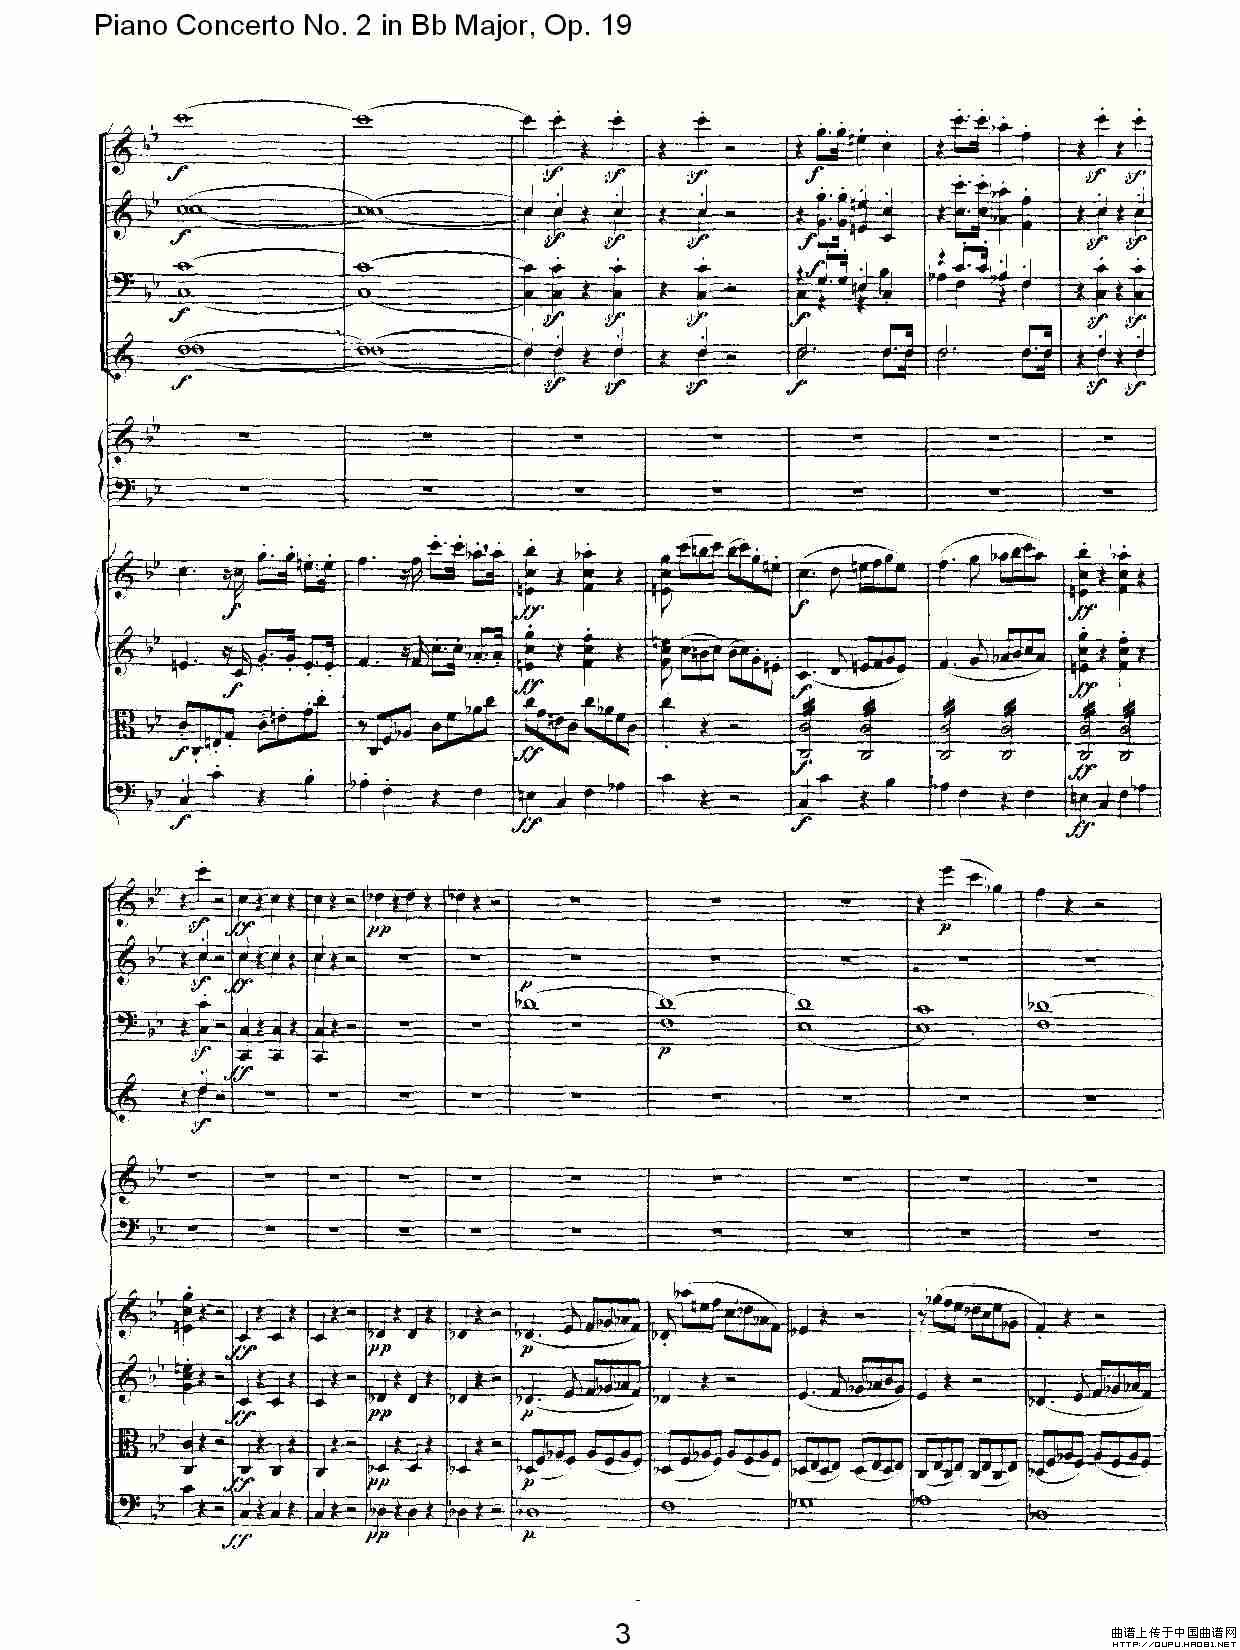 Bb大调钢琴第二协奏曲 Op. 19 第一乐章钢琴曲谱（图2）